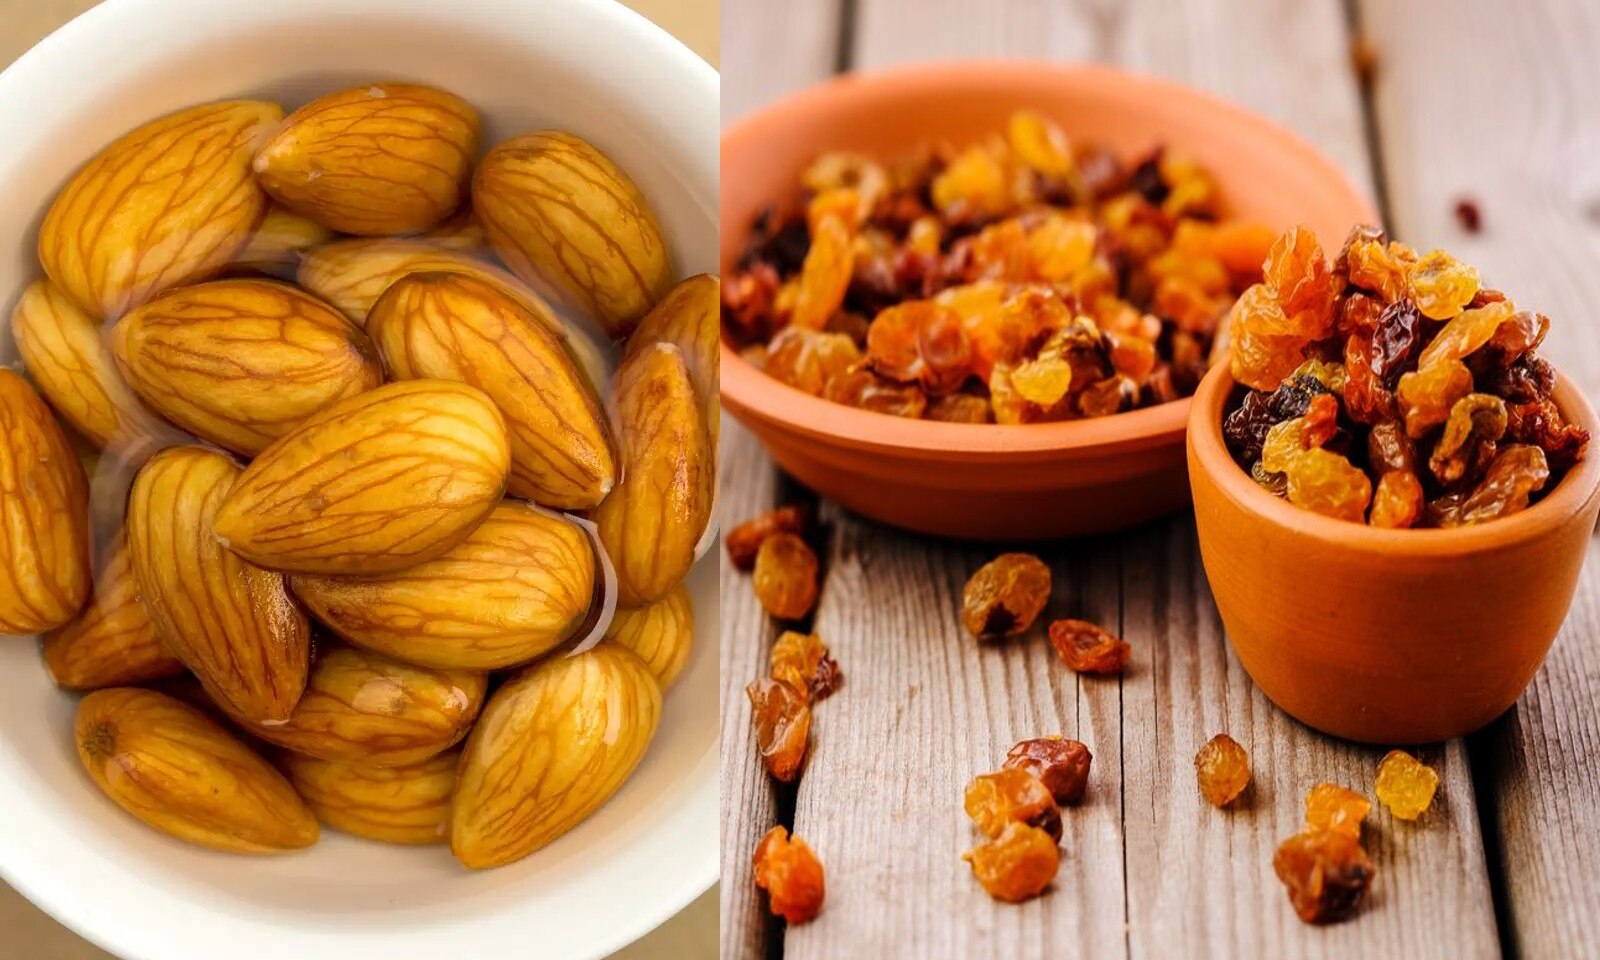 Almond and raisins benefits: इस वक्त एक साथ खाएं बादाम-किशमिश, ये बीमारियां रहेंगी दूर, मिलेंगे 7 गजब के फायदे